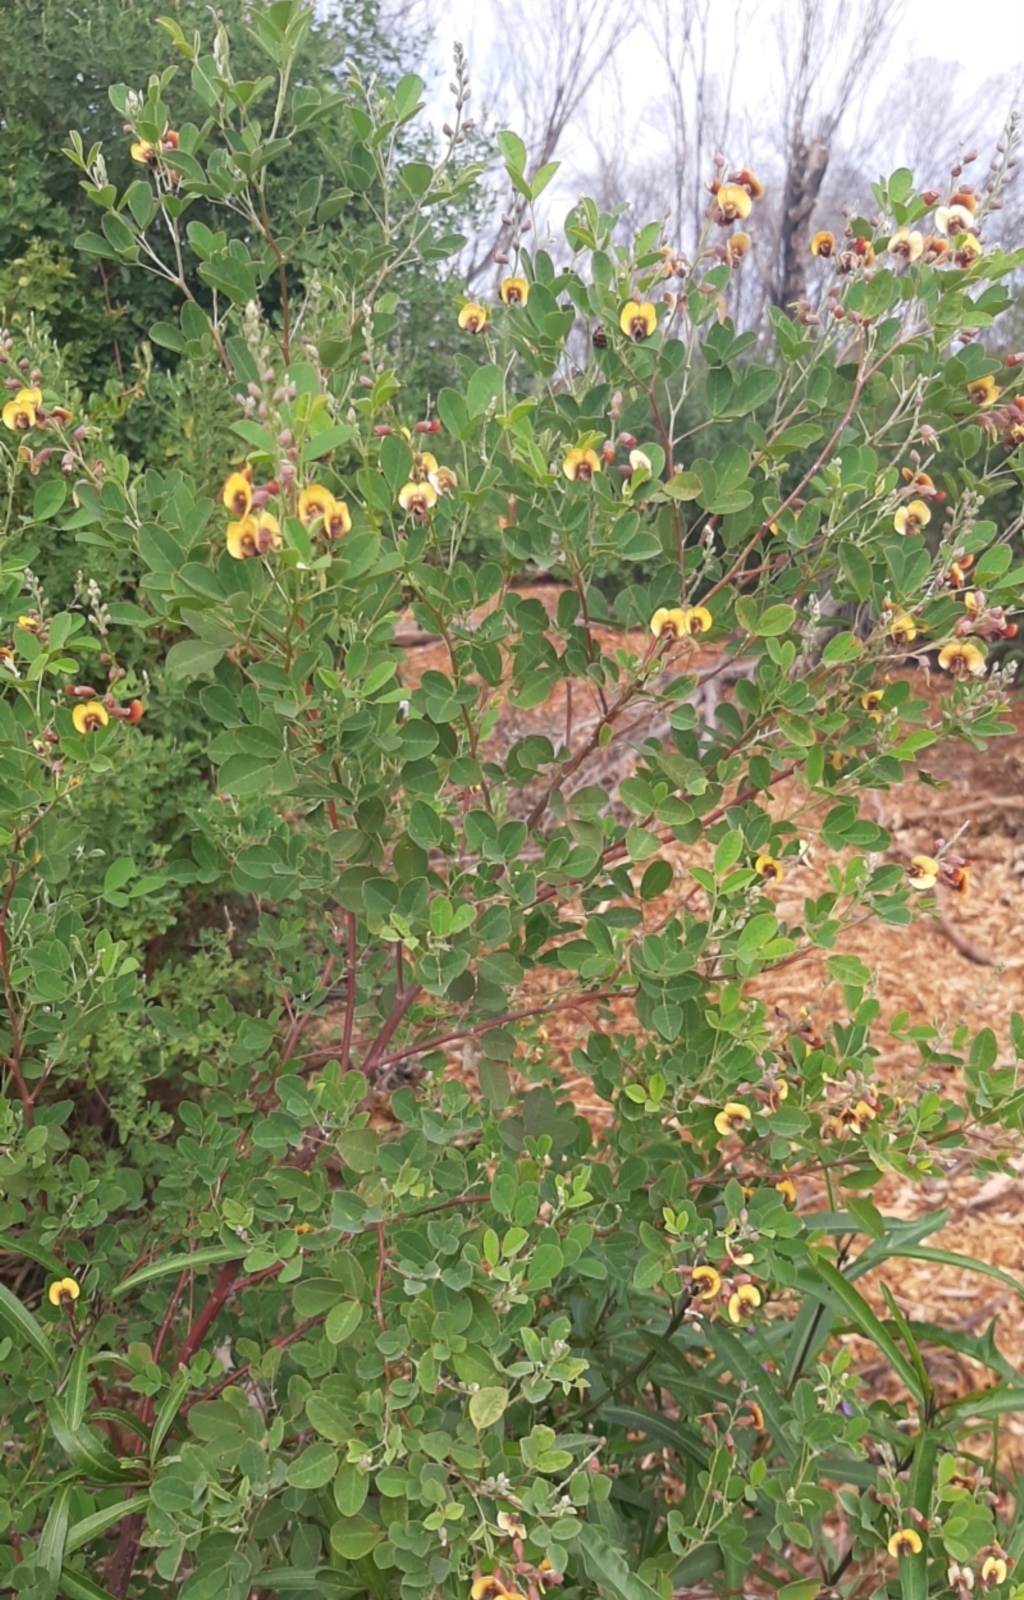 Goodia lotifolia at Flinders Chase, SA - 5 Sep 2021